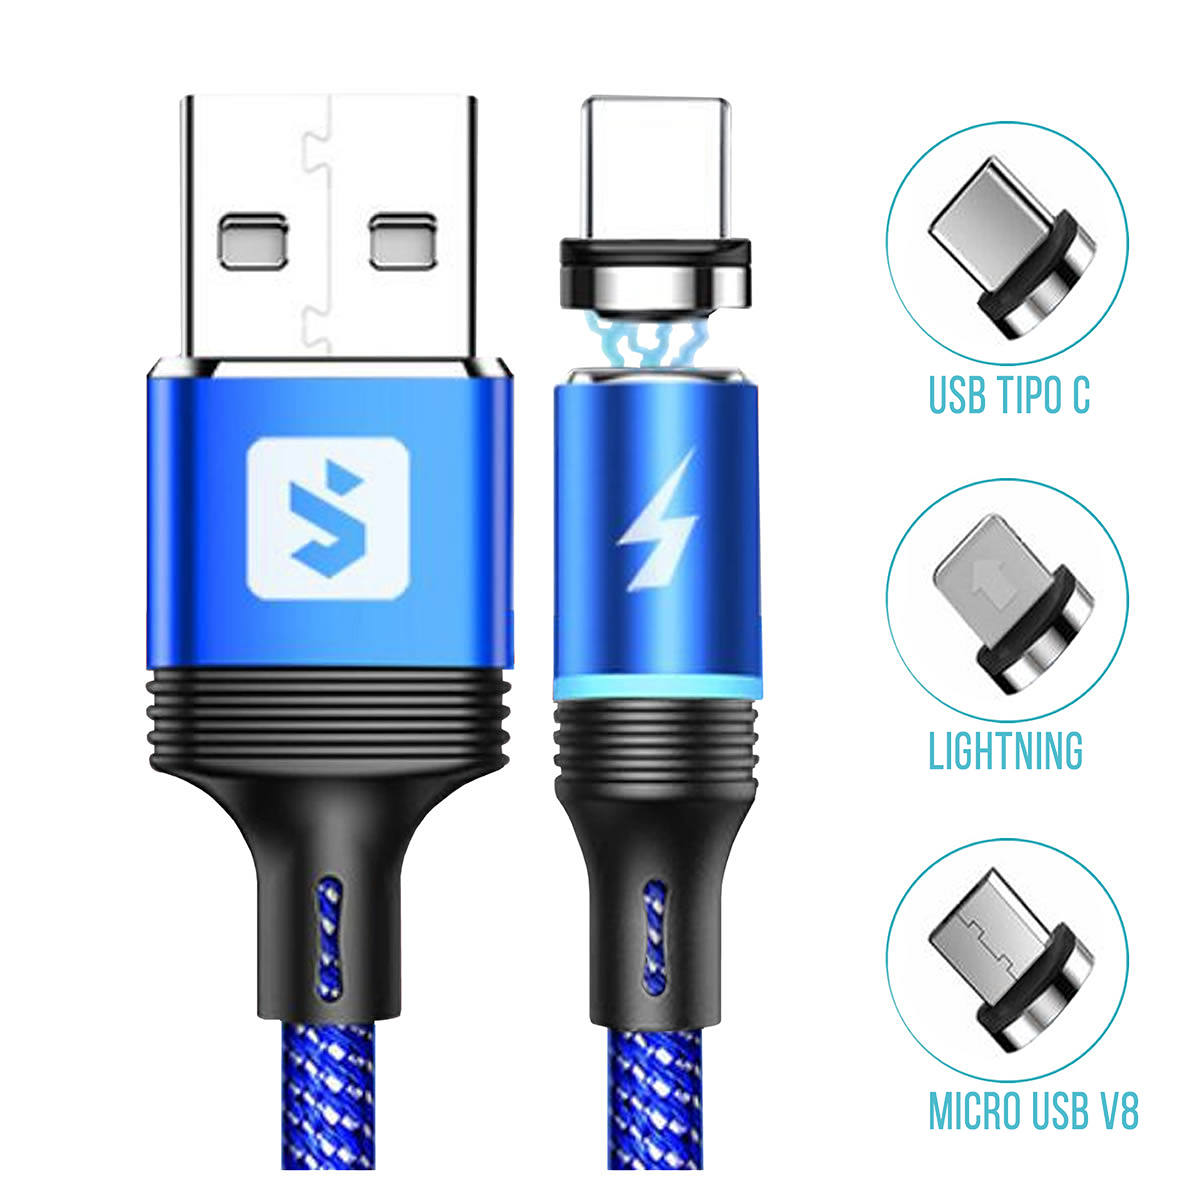 Cabo Magnético 3 em 1 para Celular Micro USB V8 + USB Tipo C + Lightning 2.4A 1 metro SX-B16-3 Azul